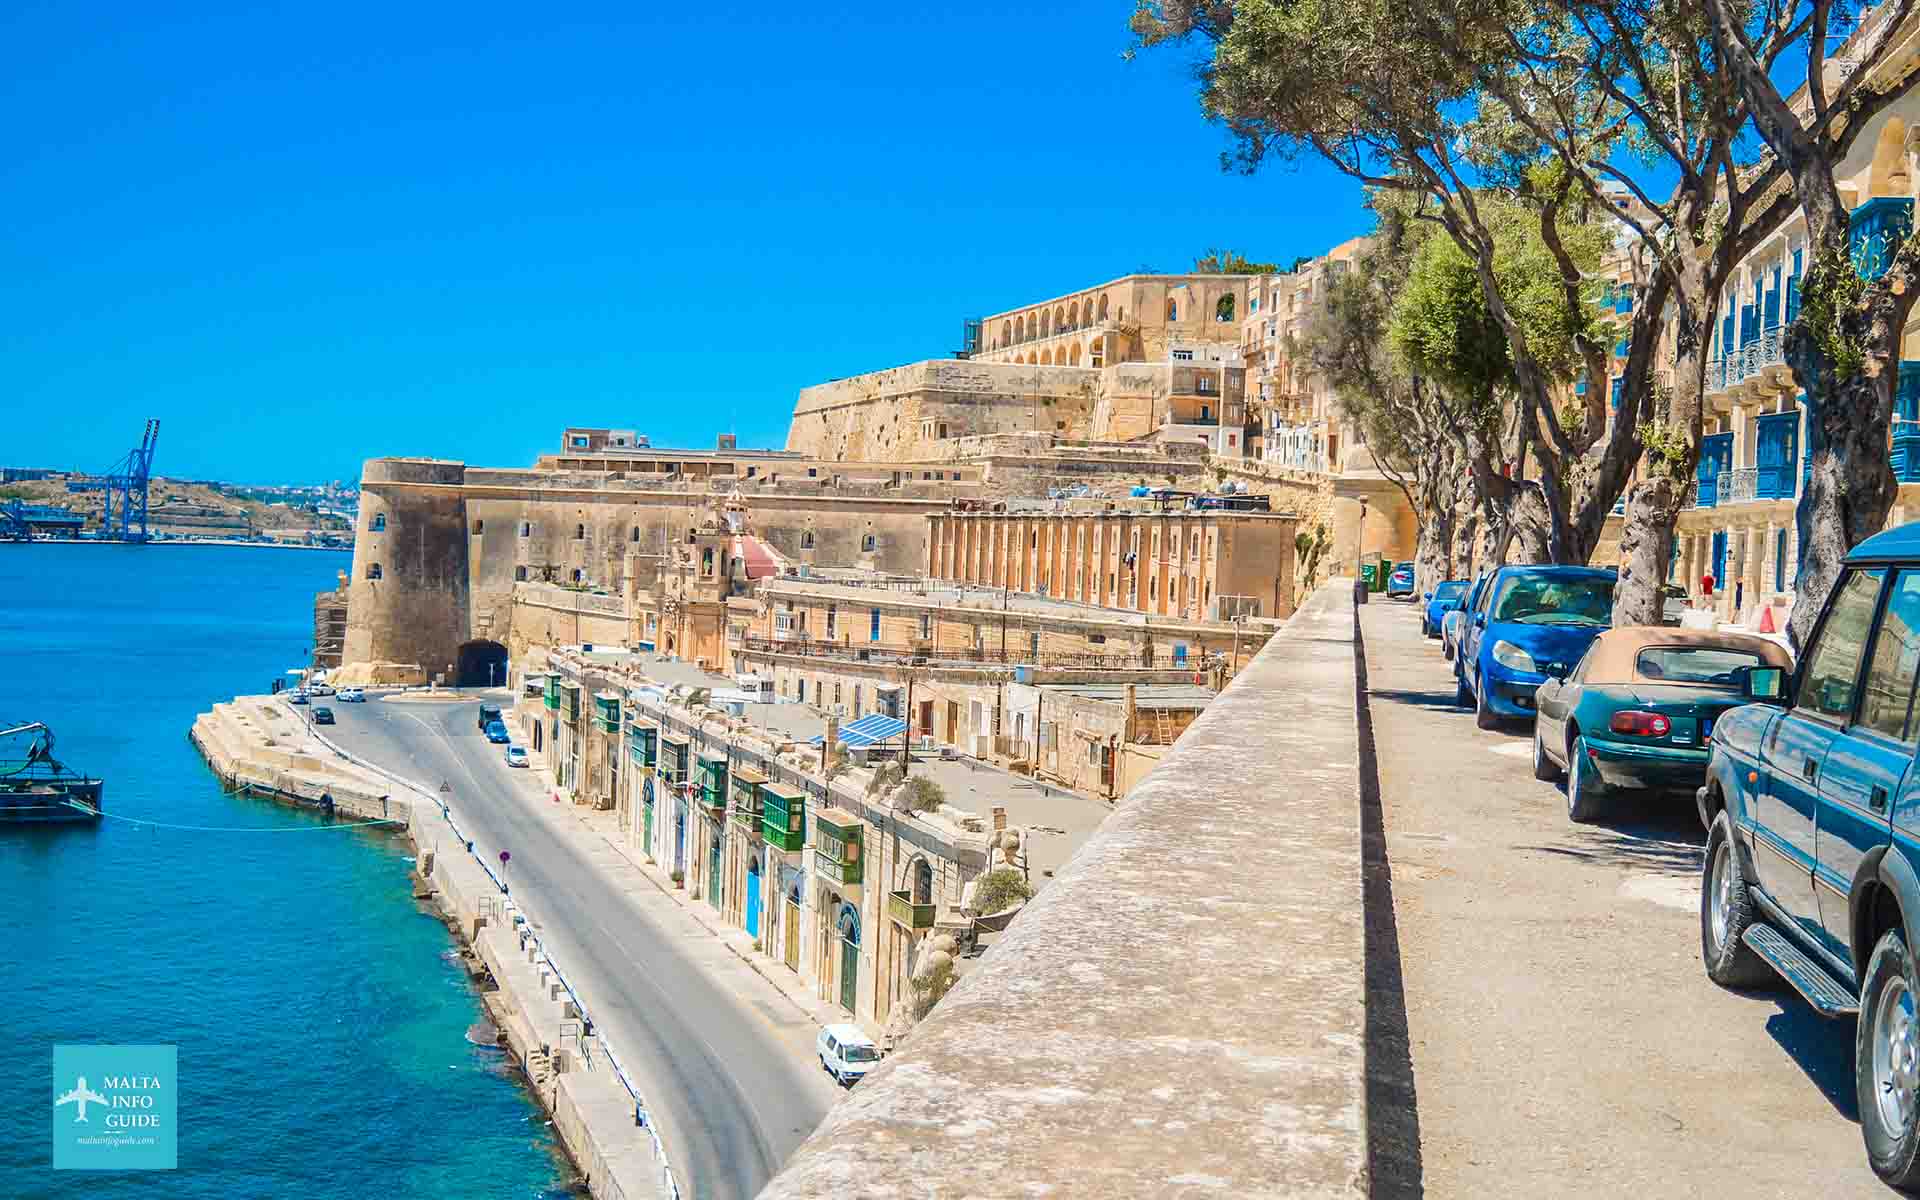 Scopri quanti giorni vale la pena rimanere a Malta. Una guida da 1 a 7 giorni a Malta e suggerimenti su come suddividere la vacanza sulle isole.